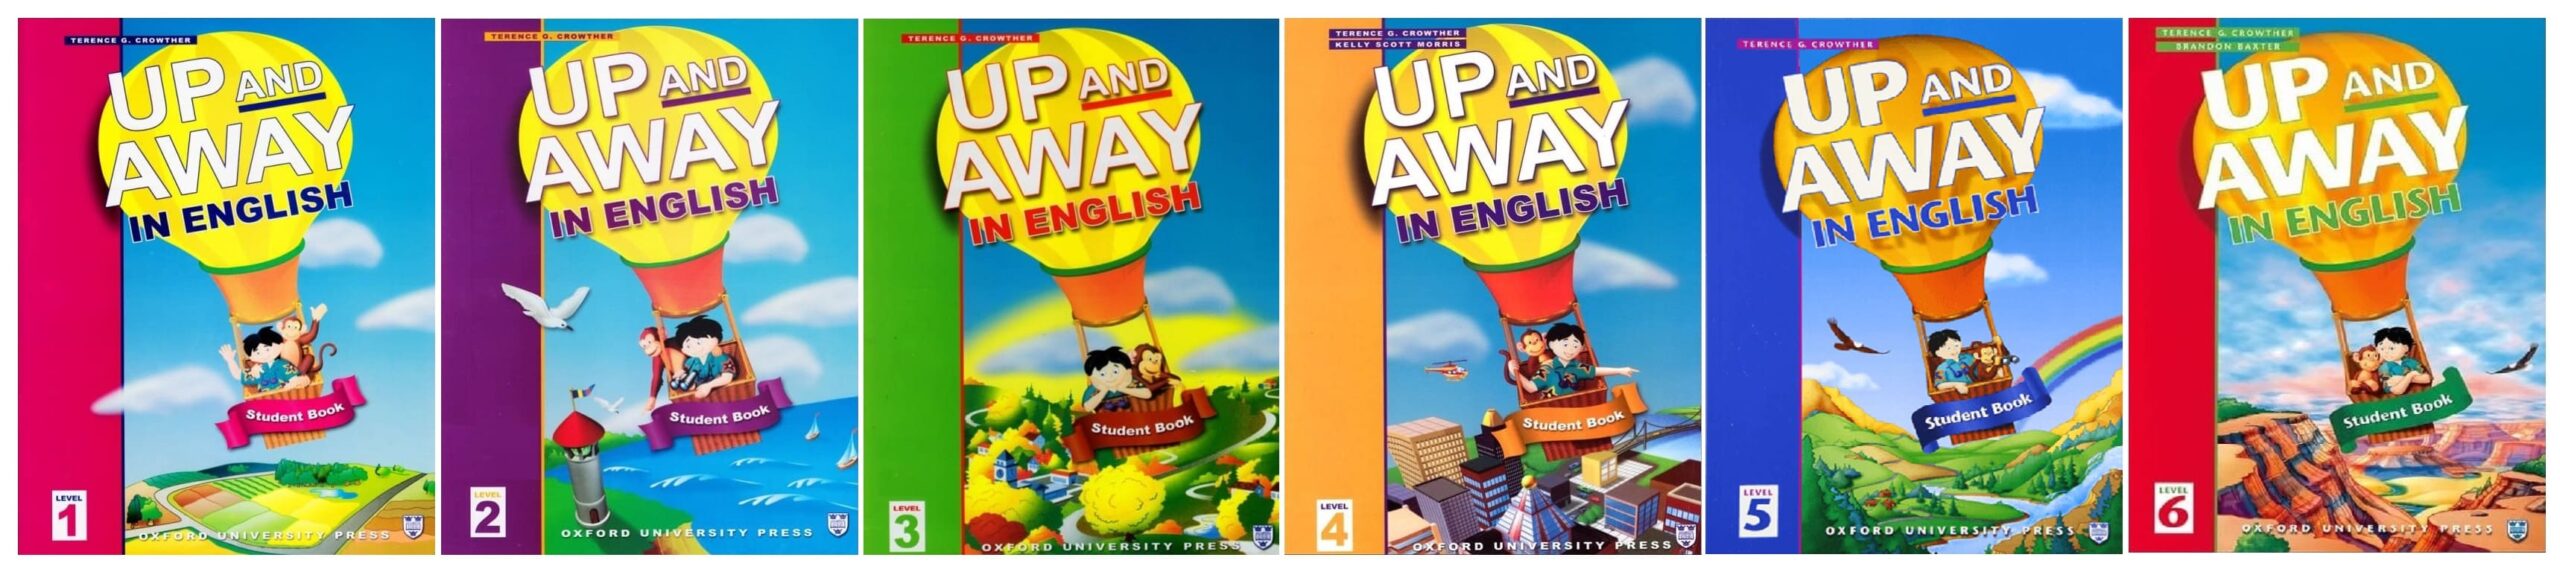 خرید کتاب زبان | کتاب زبان اصلی | Up and Away in English | آپ اند اوی این انگلیش